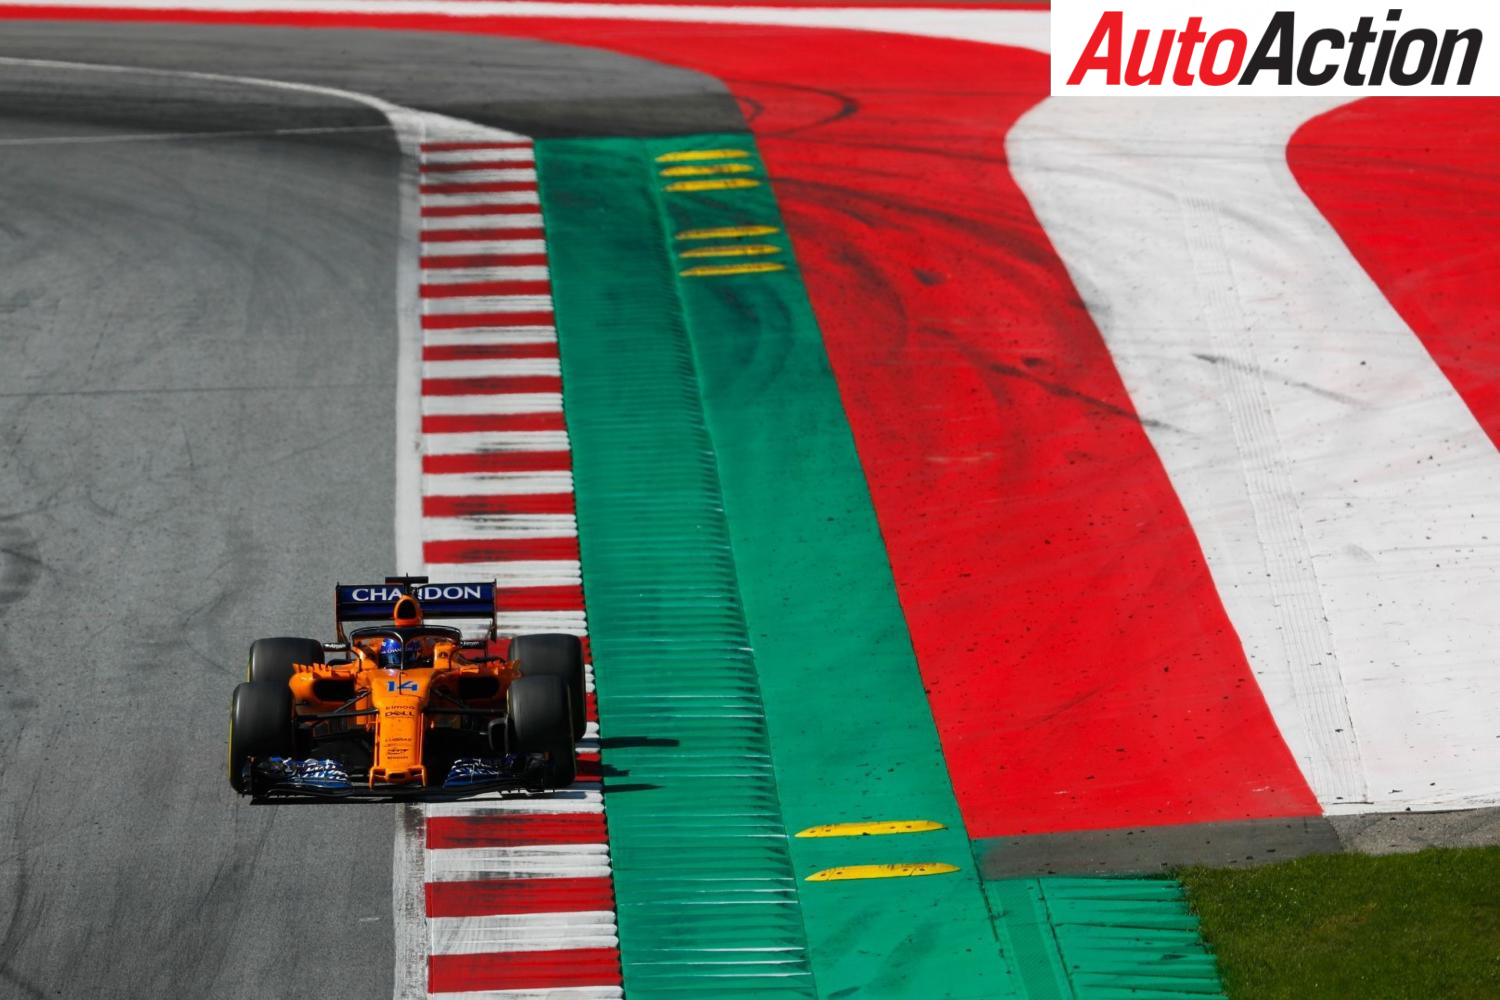 Management changes at McLaren - Photo: LAT